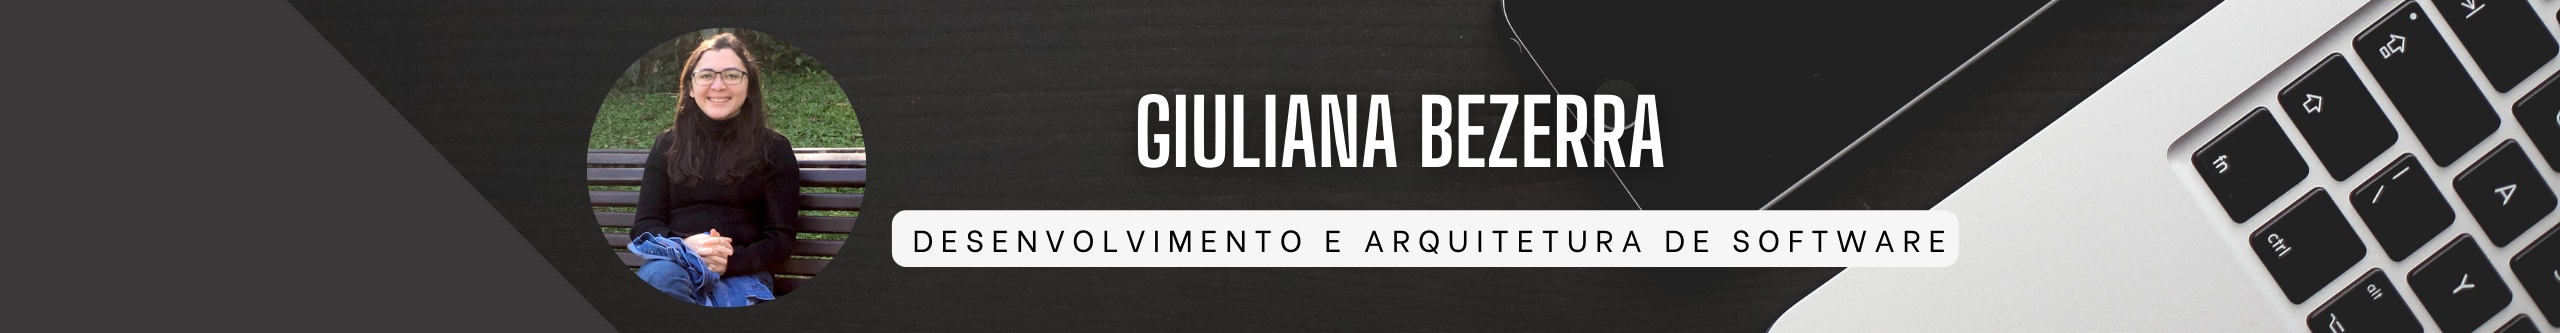 Giuliana Bezerra - Desenvolvimento e Arquitetura de Software